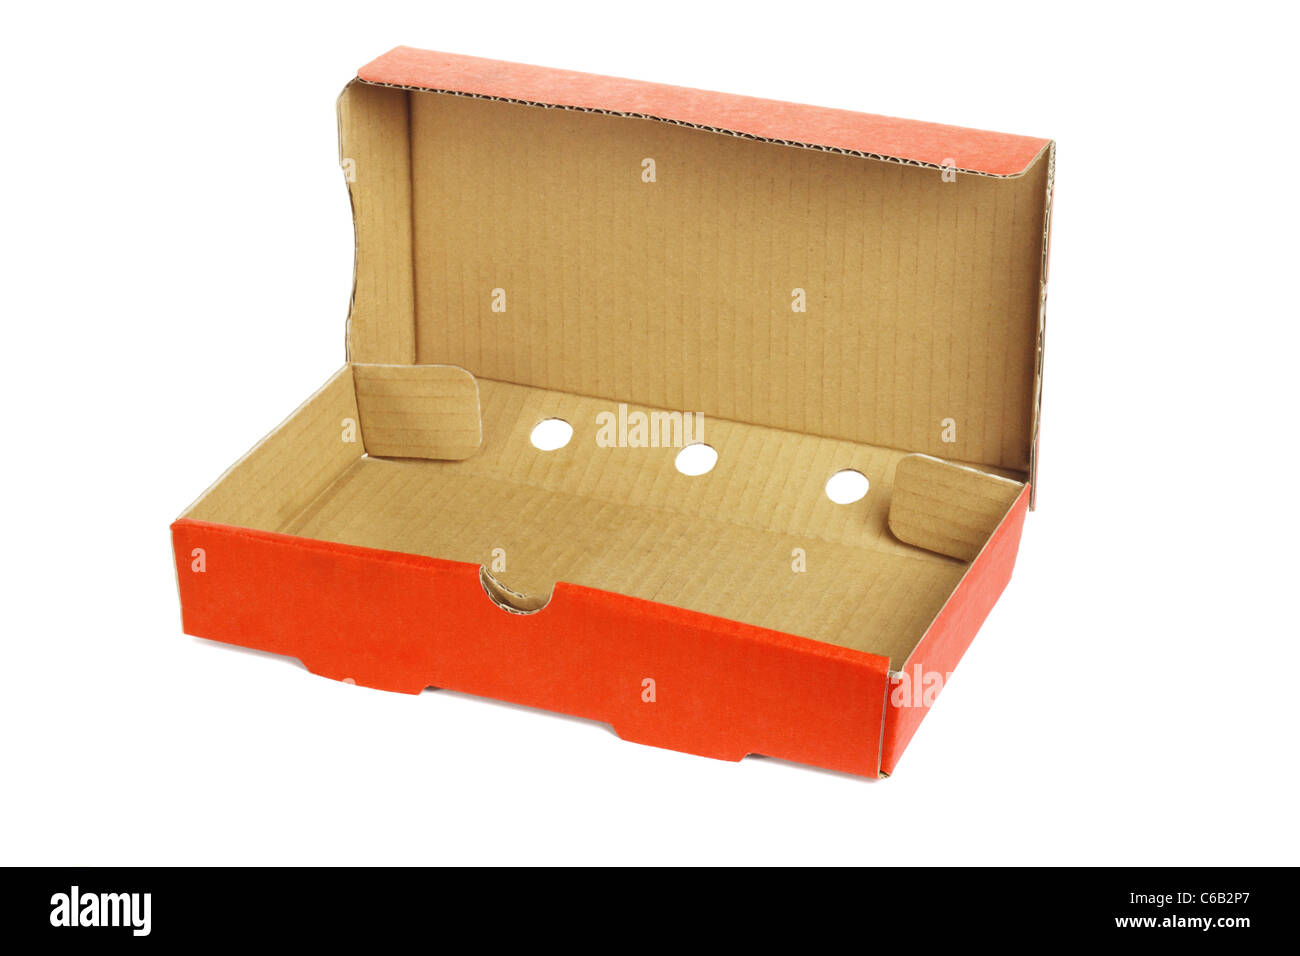 Rechteckige Form Take away Pizza-Schachtel auf weißem Hintergrund Stockfoto